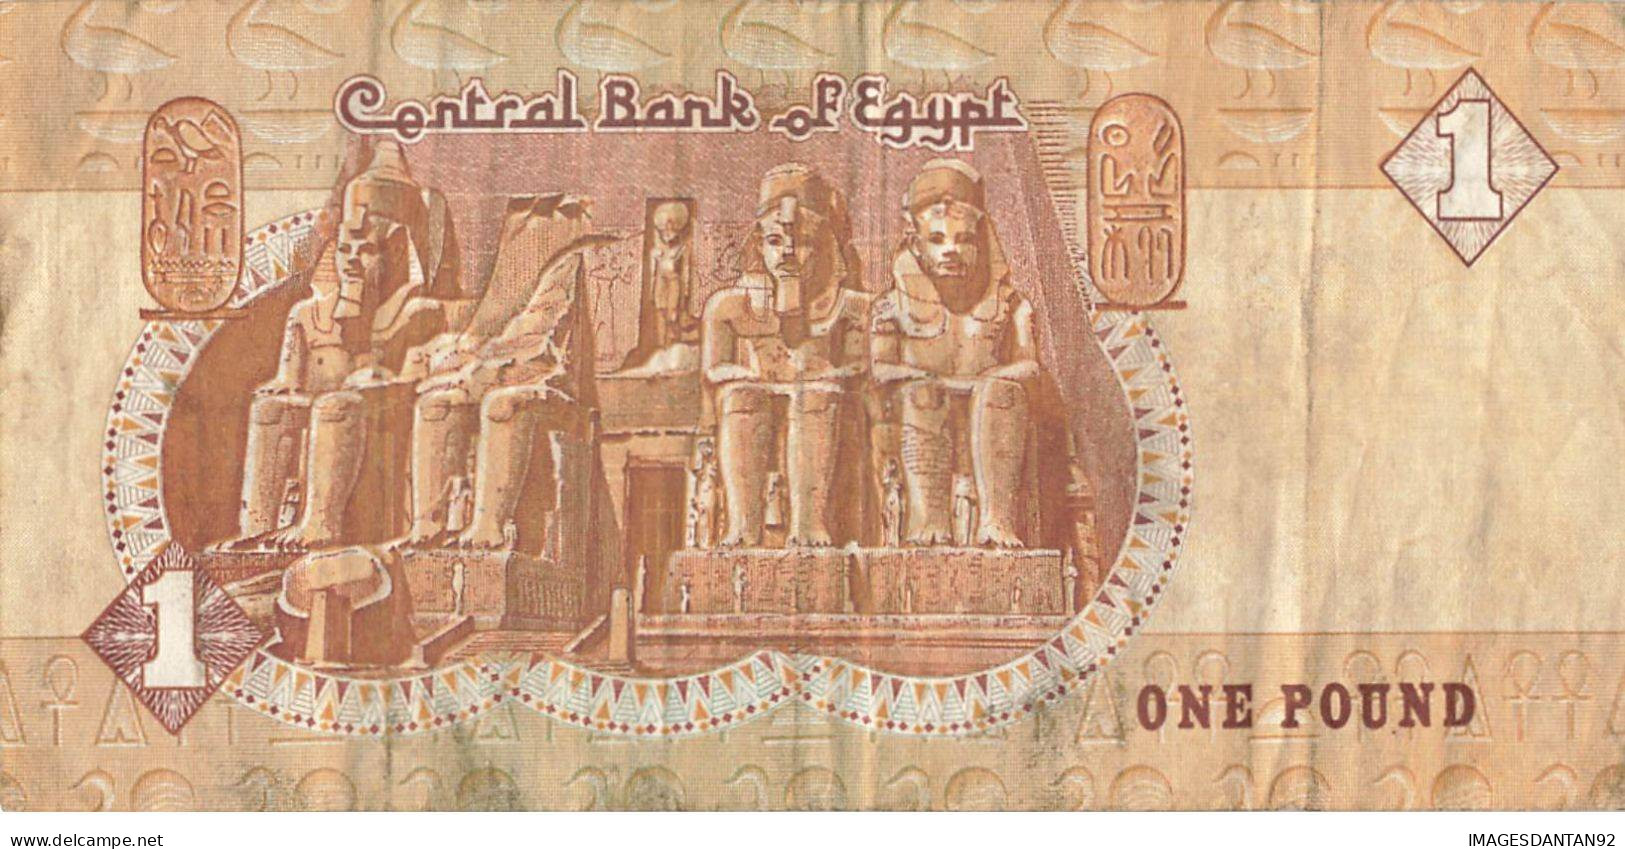 EGYPTE EGYPT 17 BANK NOTE PIASTRE POUND